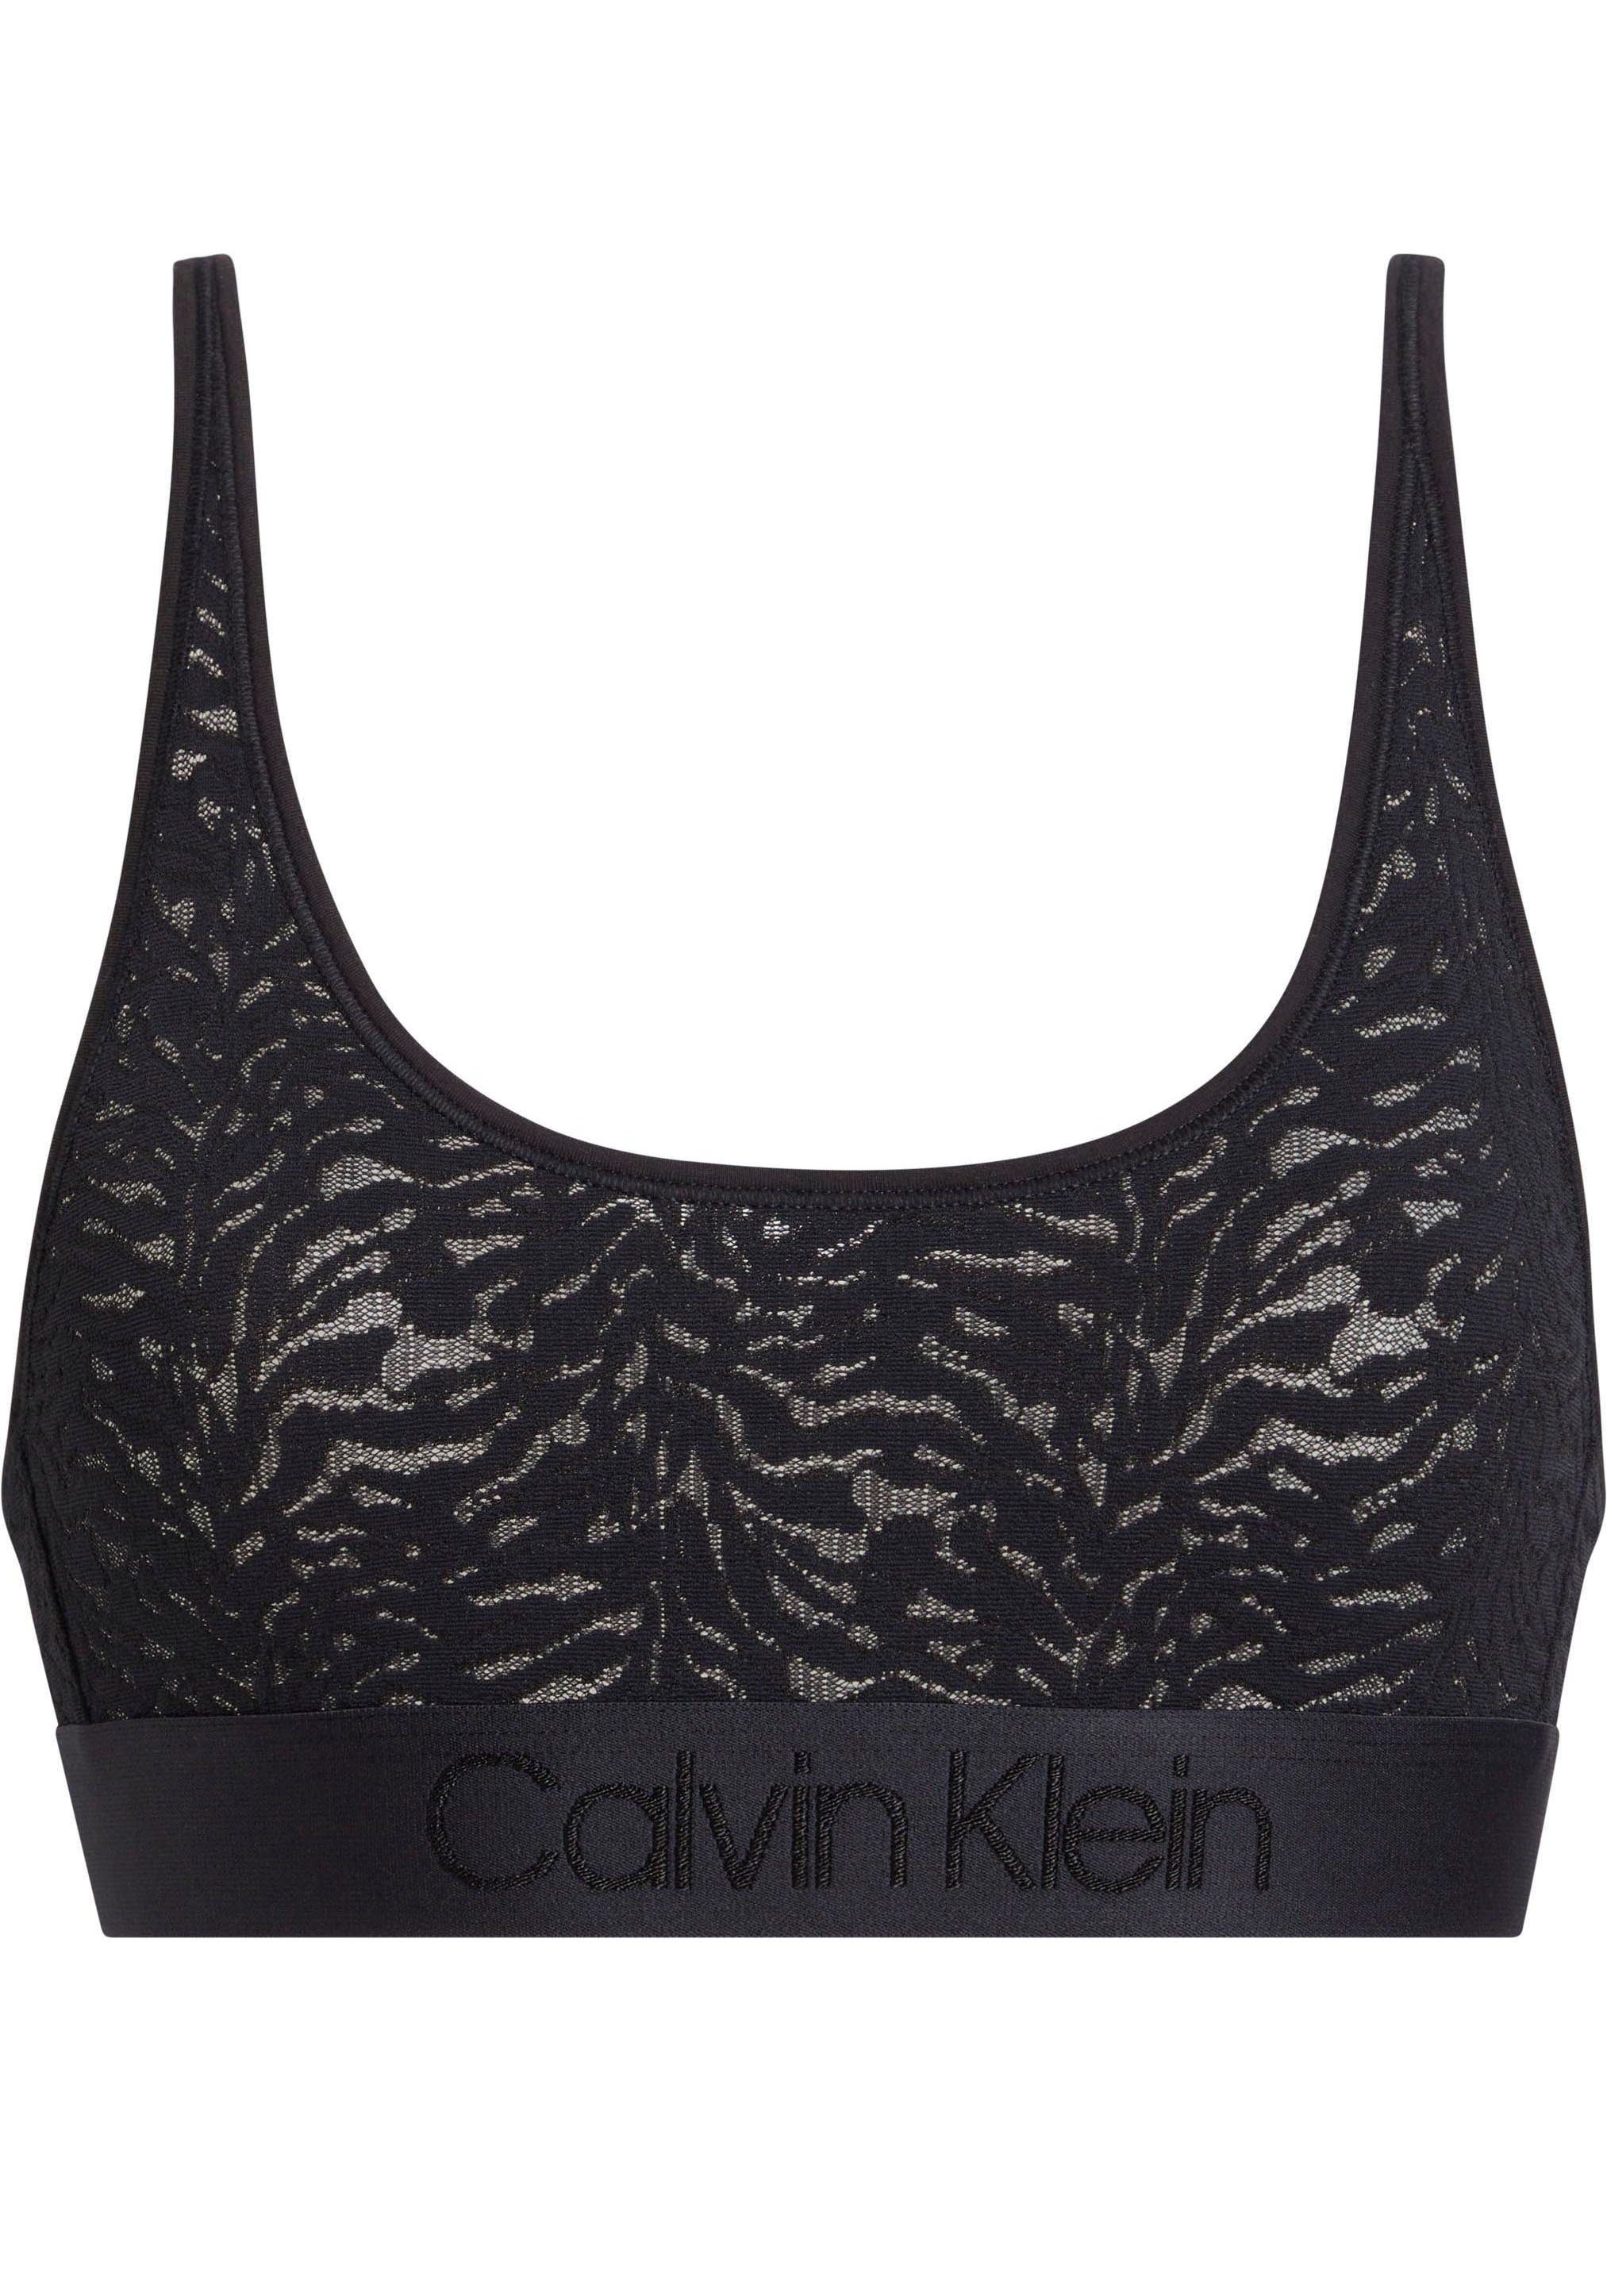 Bralette-BH BLACK aus Underwear Calvin Klein Spitze UNLINED BRALETTE